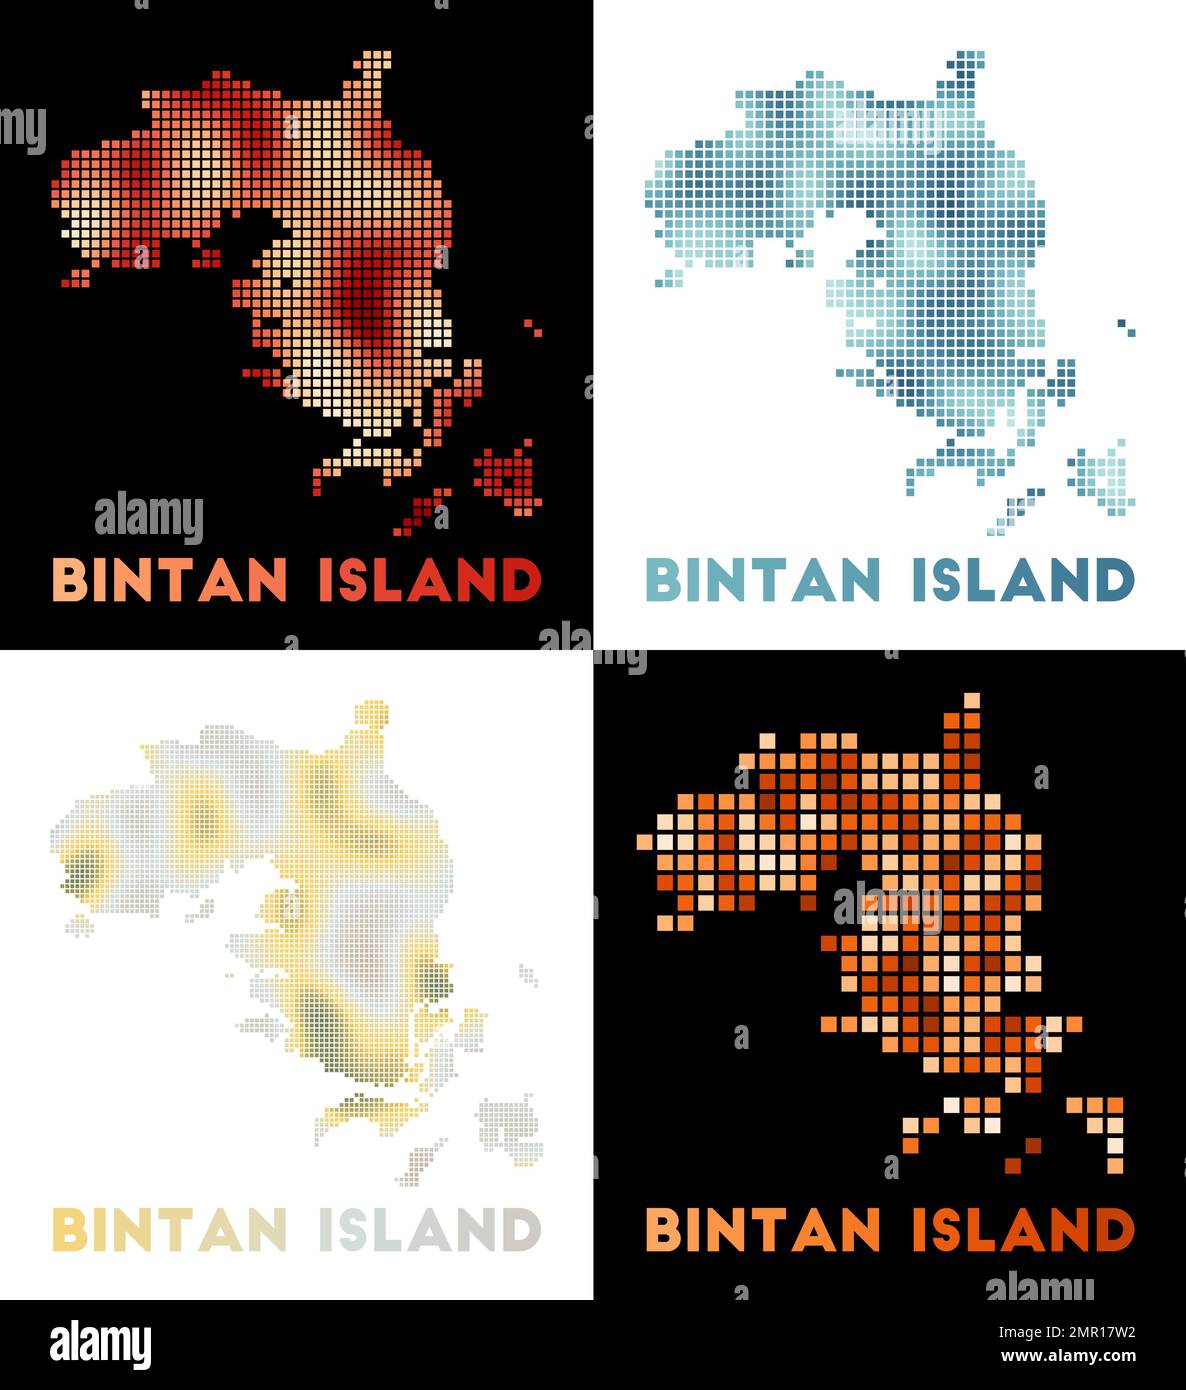 Karte der Insel Bintan. Kartensammlung von Bintan Island im gepunkteten Stil. Vektordarstellung. Stock Vektor